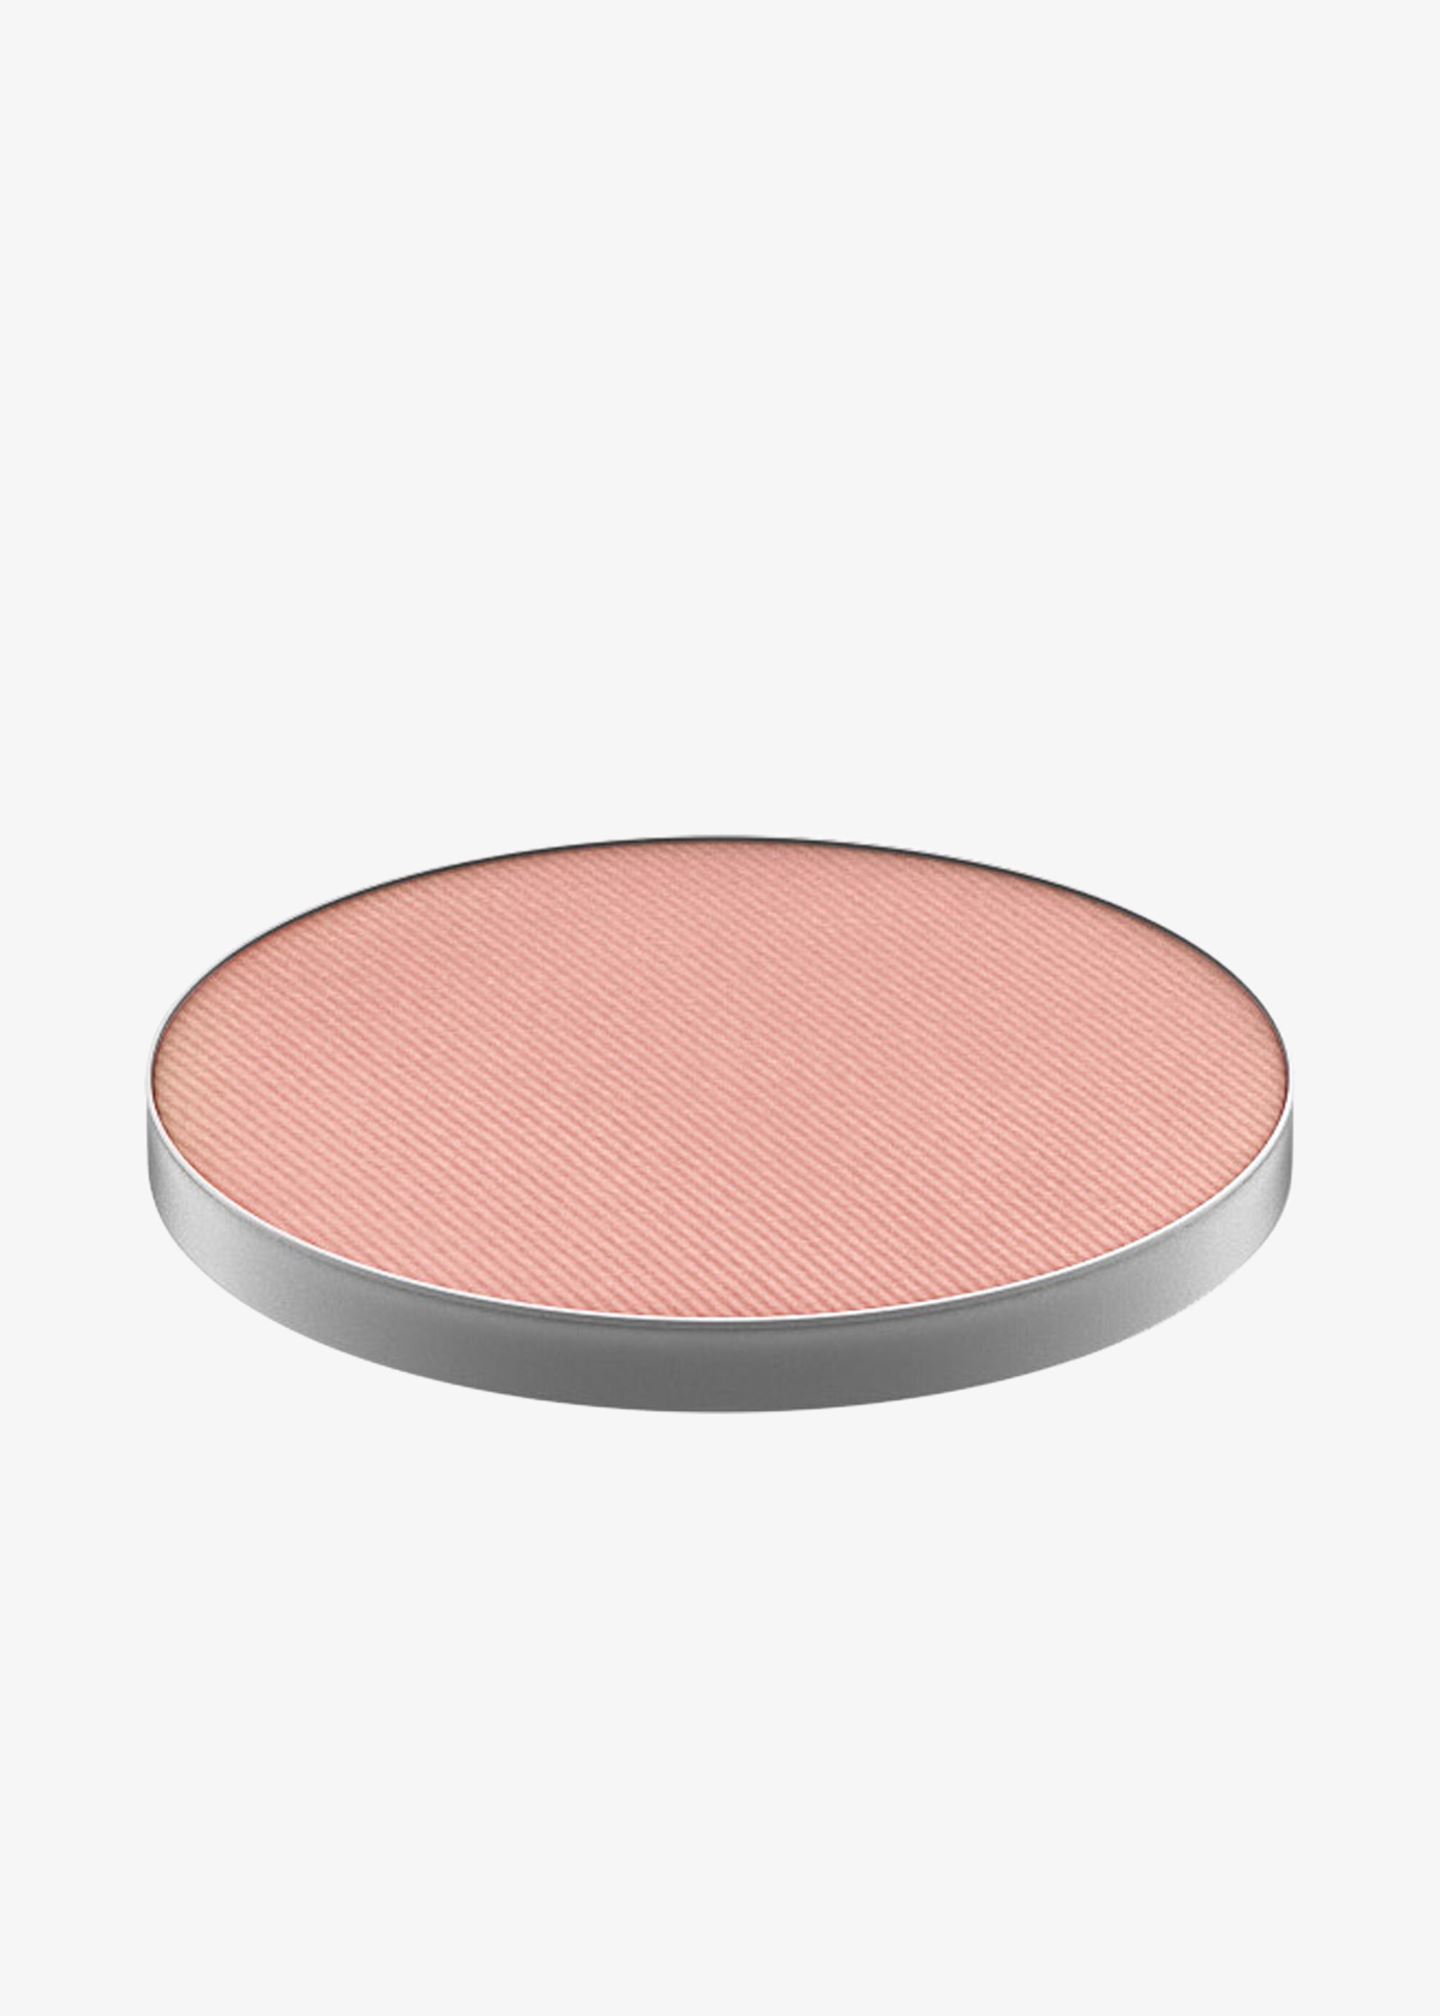 Blush «Pro Palette Refill Pan»